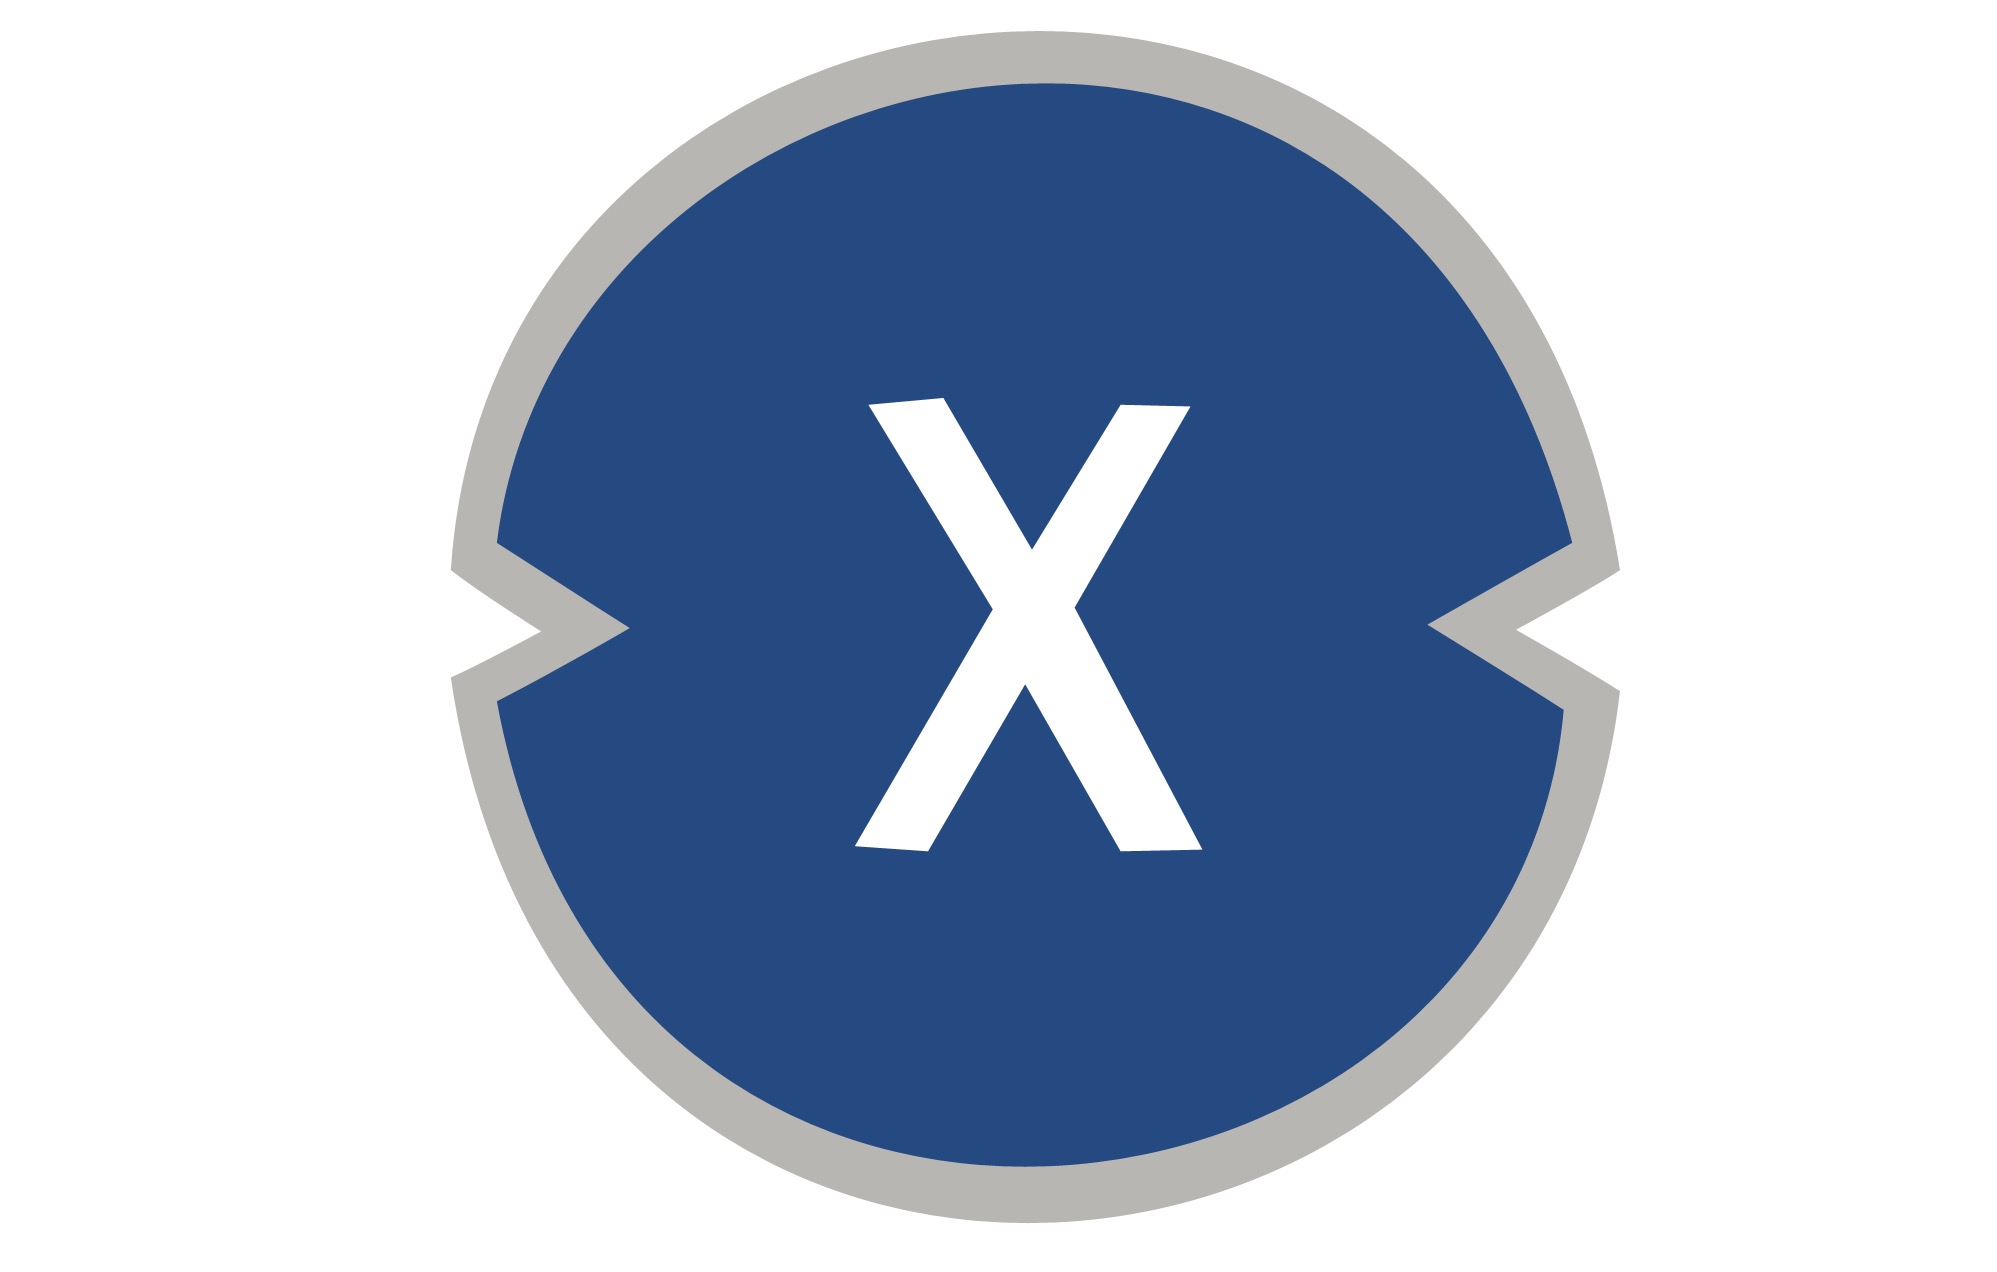 Xinfin Unveils XDC Utility Token